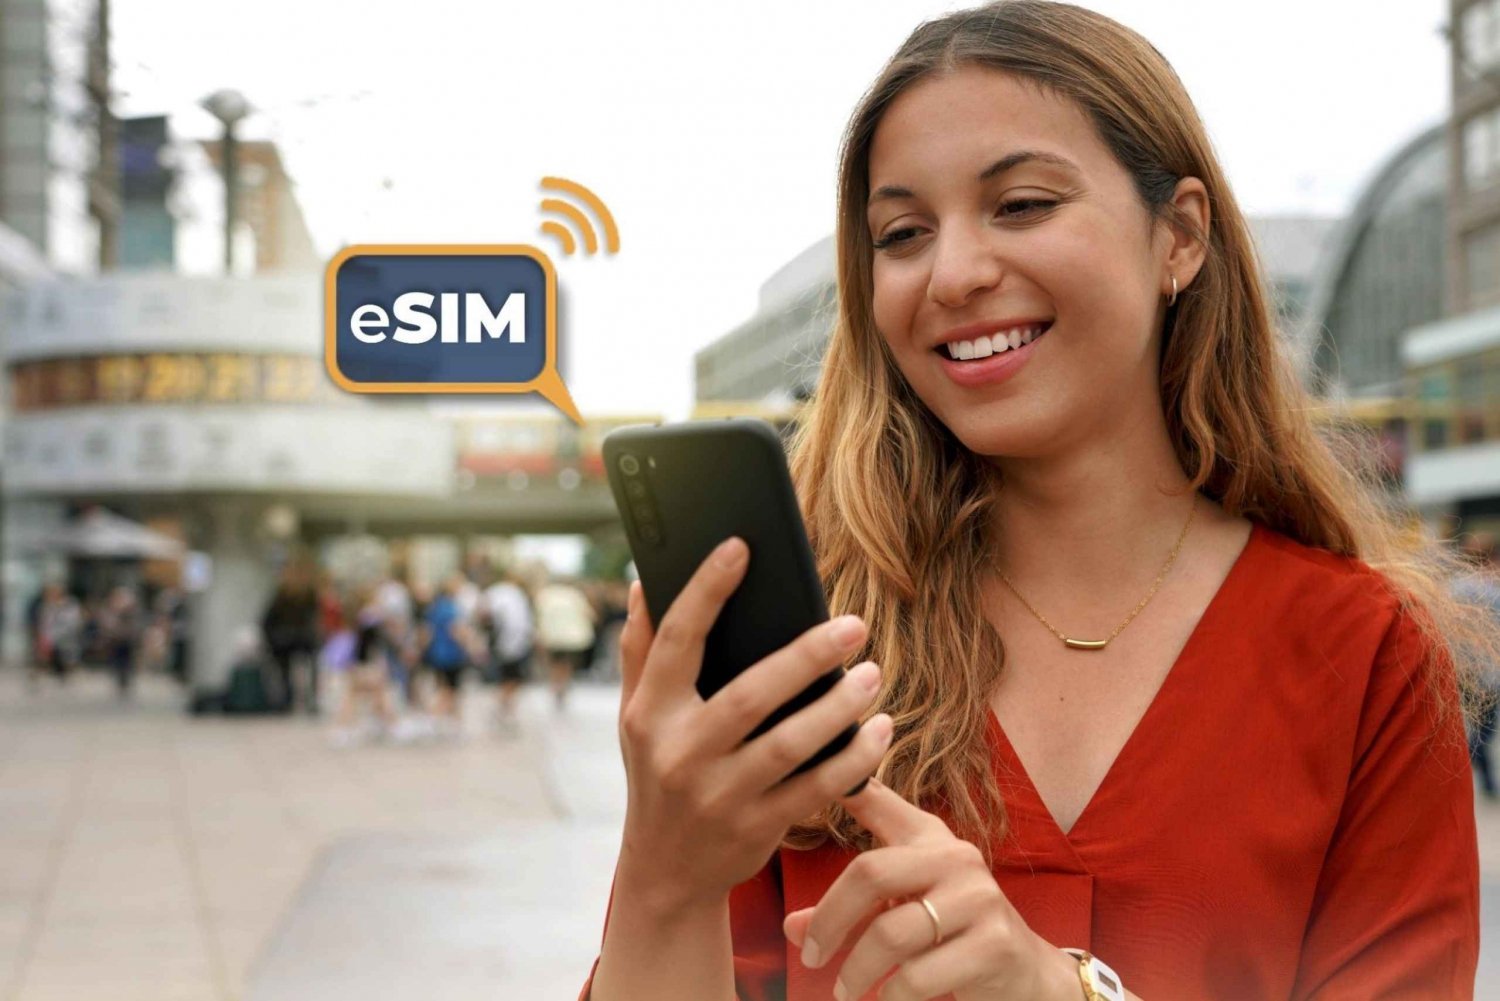 Berlín&Alemania: Internet ilimitado en la UE con datos móviles eSIM